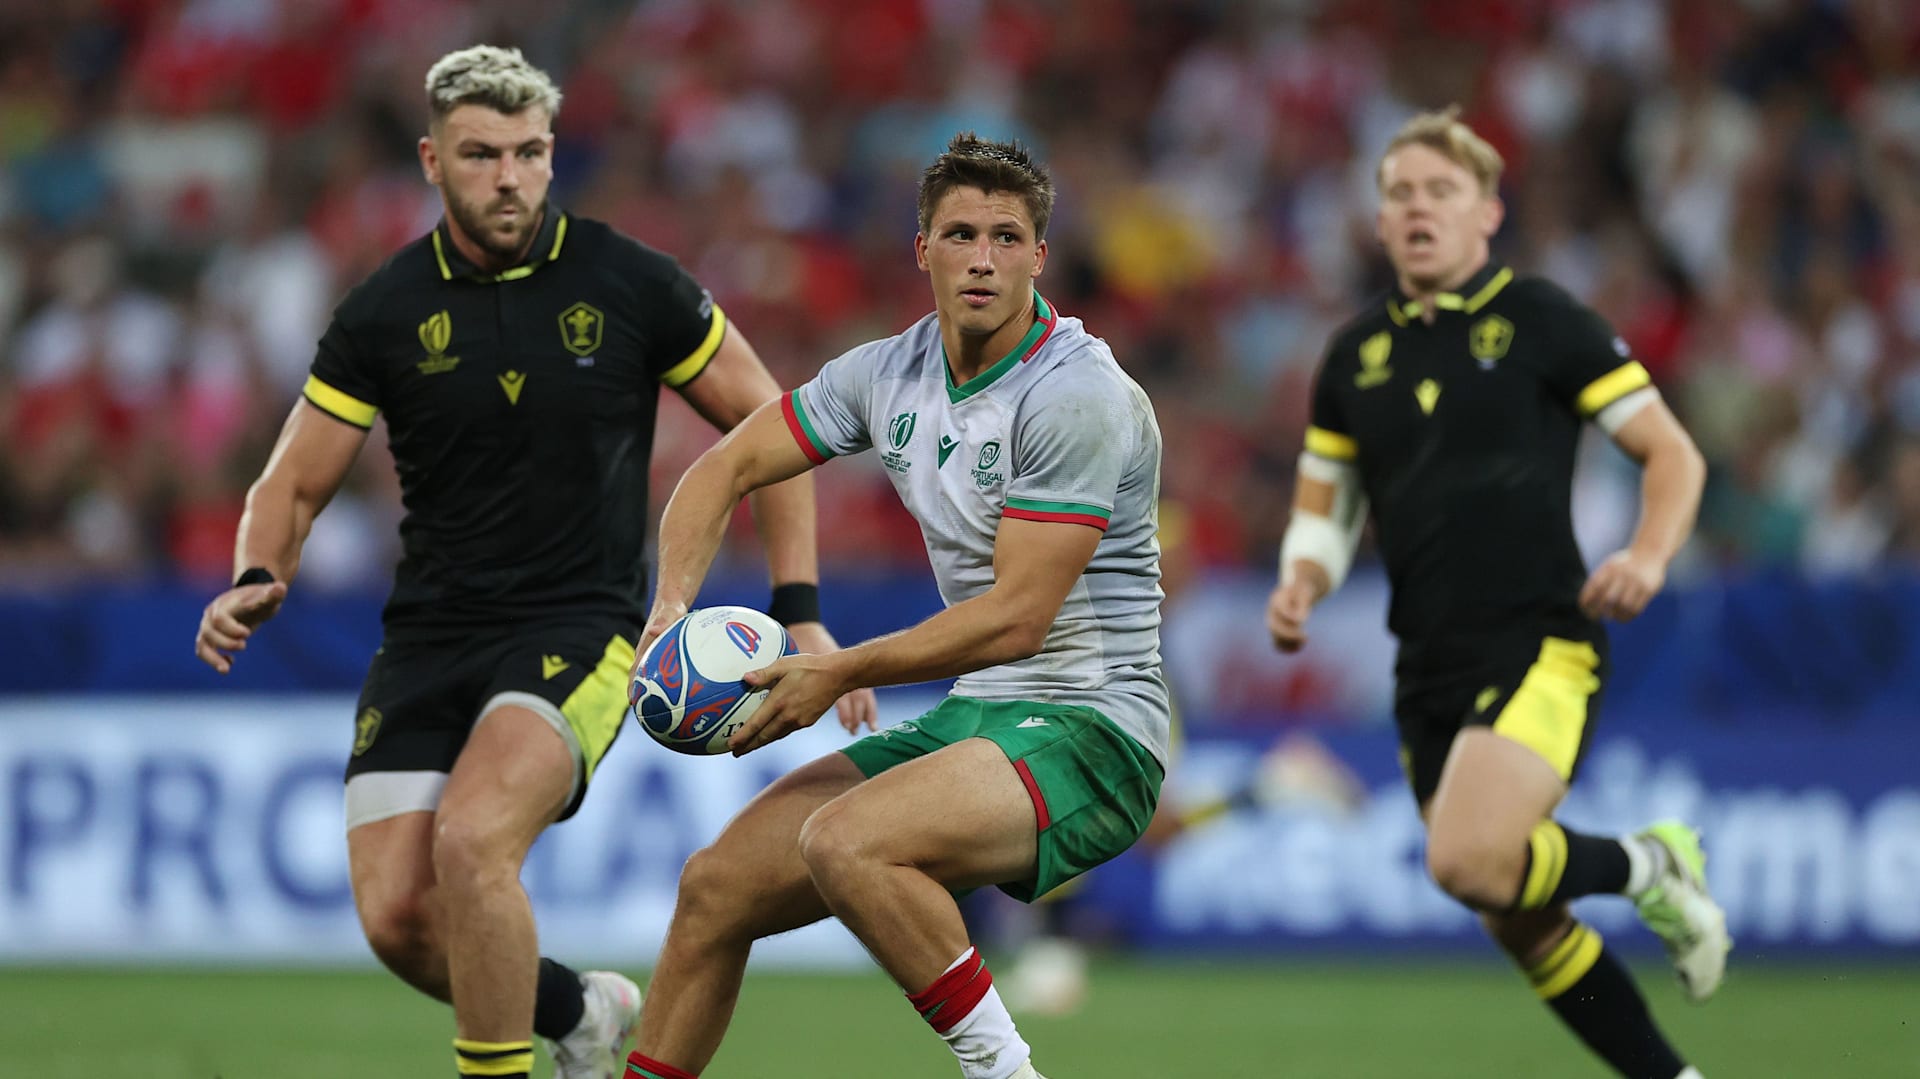 Portugal x Gales na Copa do Mundo de Rugby 2023: horário e onde assistir